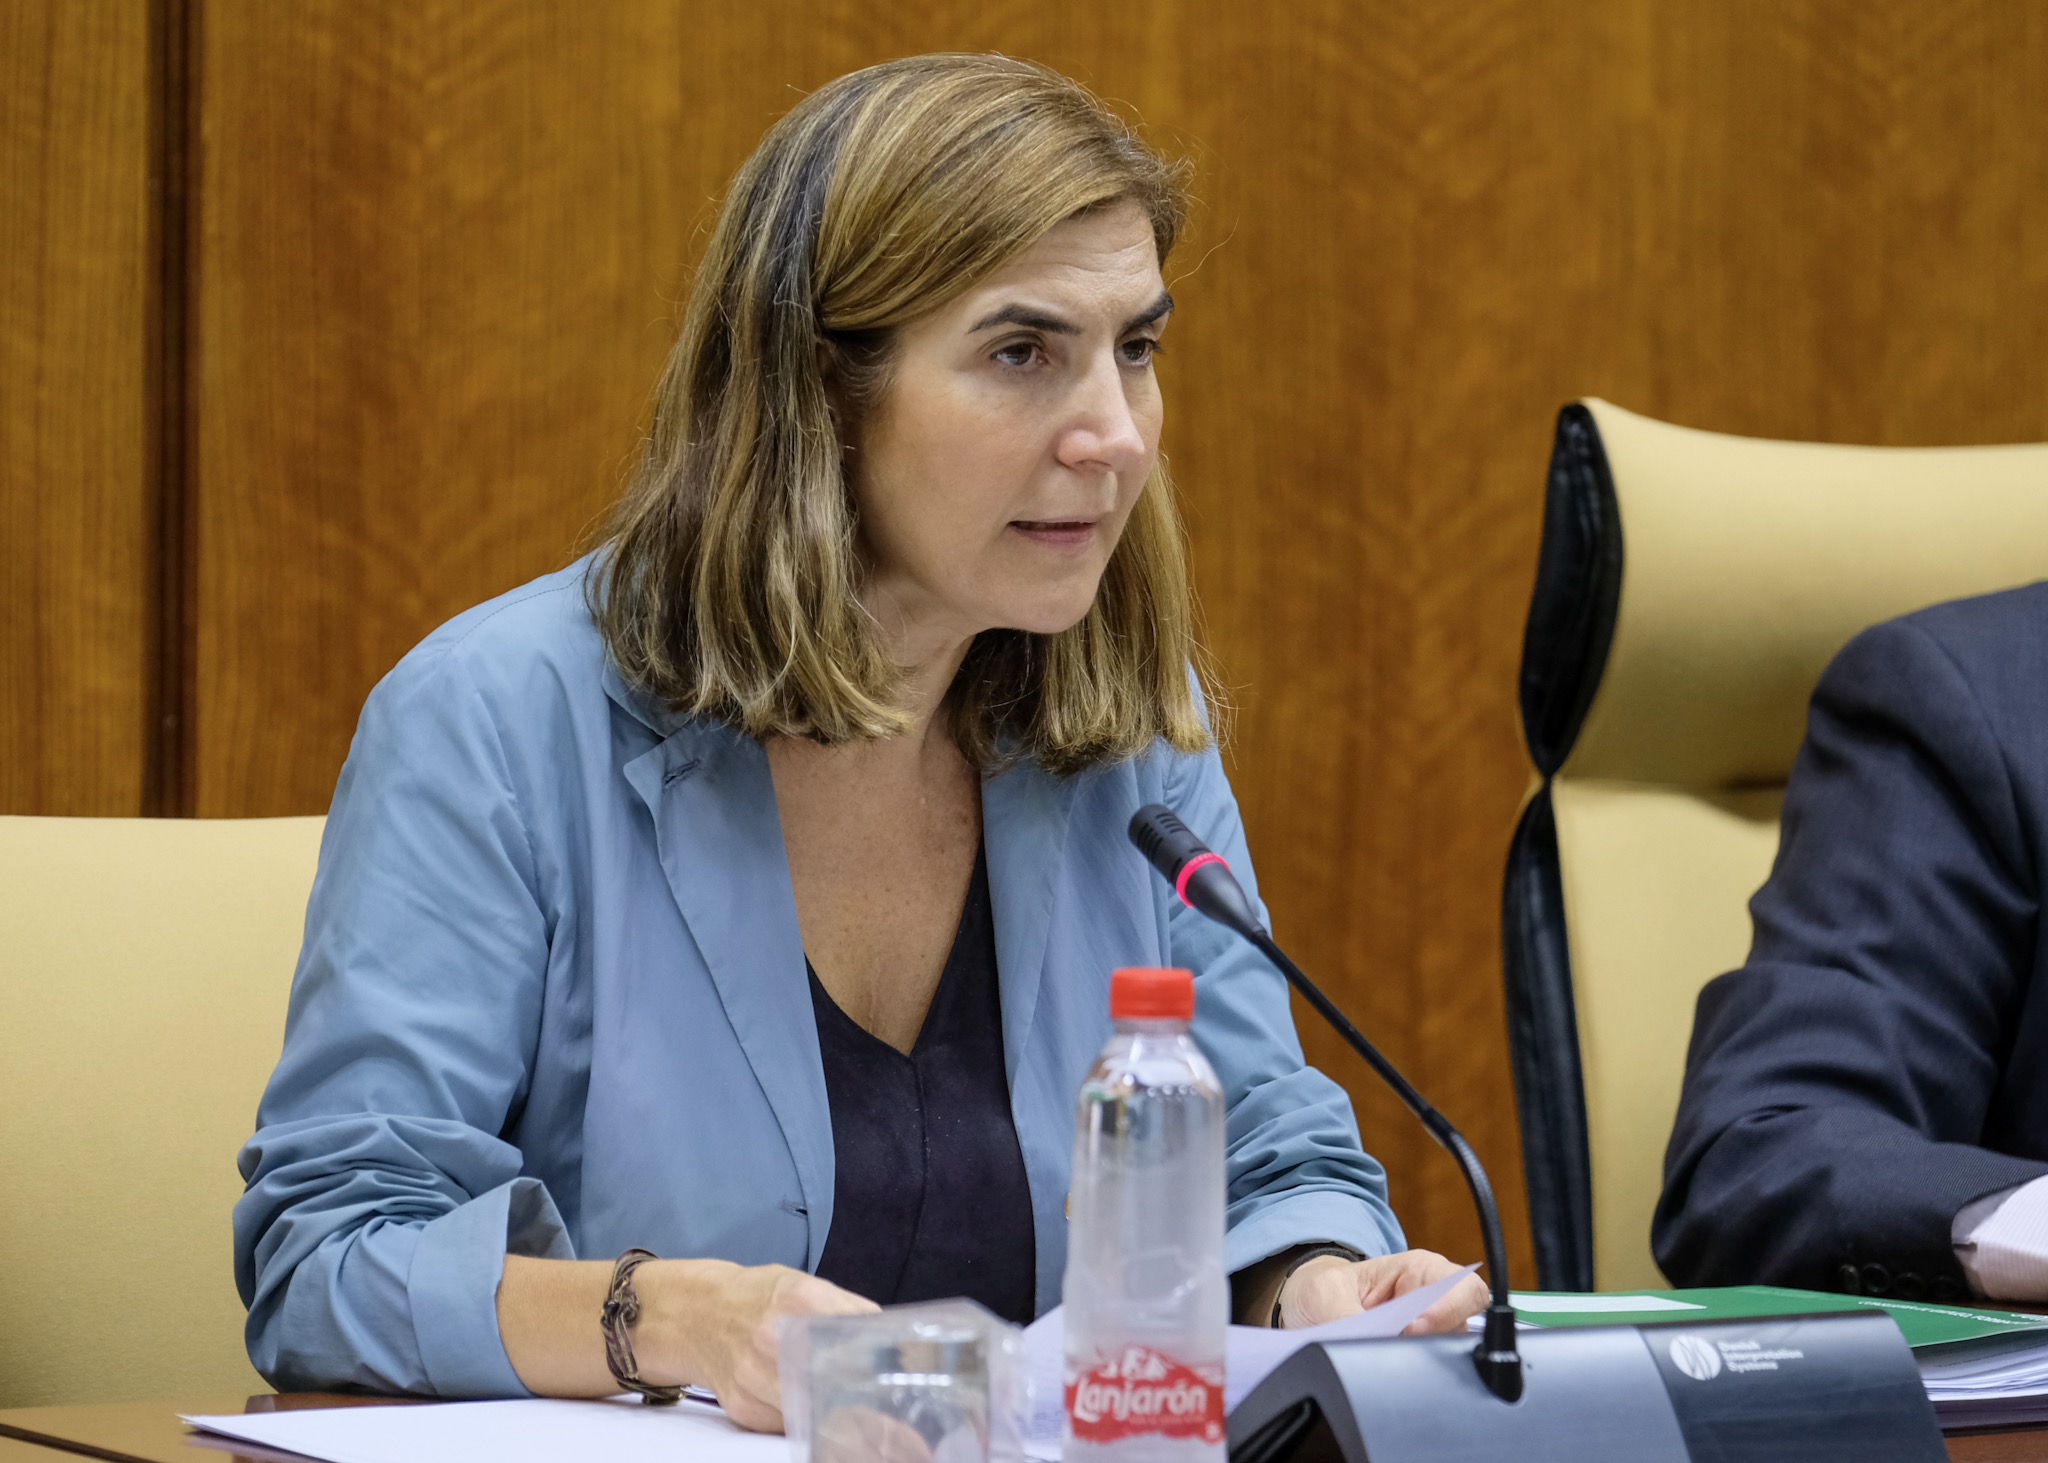  Roco Blanco, consejera de Empleo, Formacin y Trabajo Autnomo comparece en sede parlamentaria para explicar los presupuestos de su departamento para el ao 2020